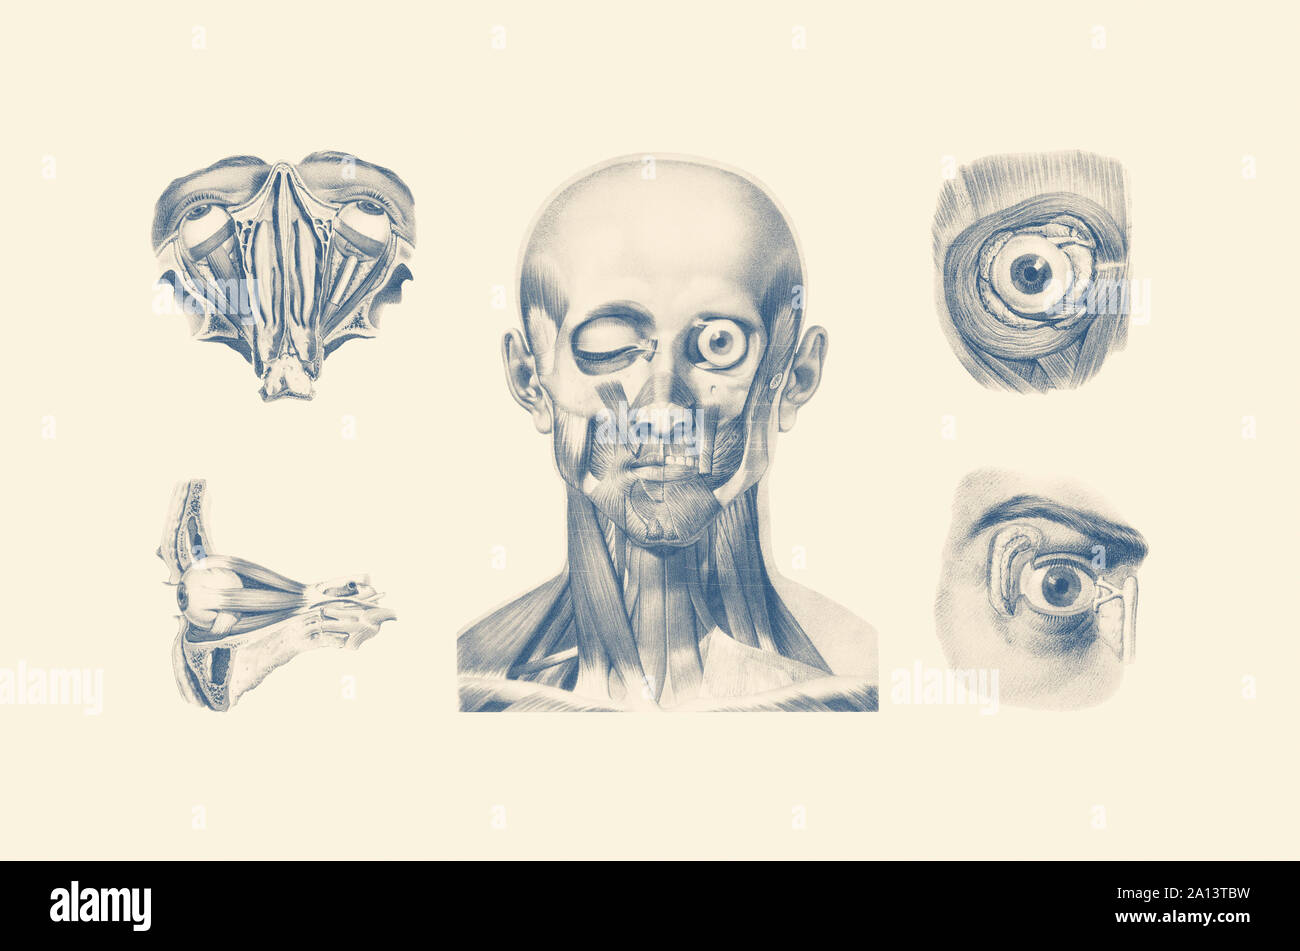 Anatomia Vintage Print mostra diverse visualizzazioni del volto umano e gli occhi. Foto Stock